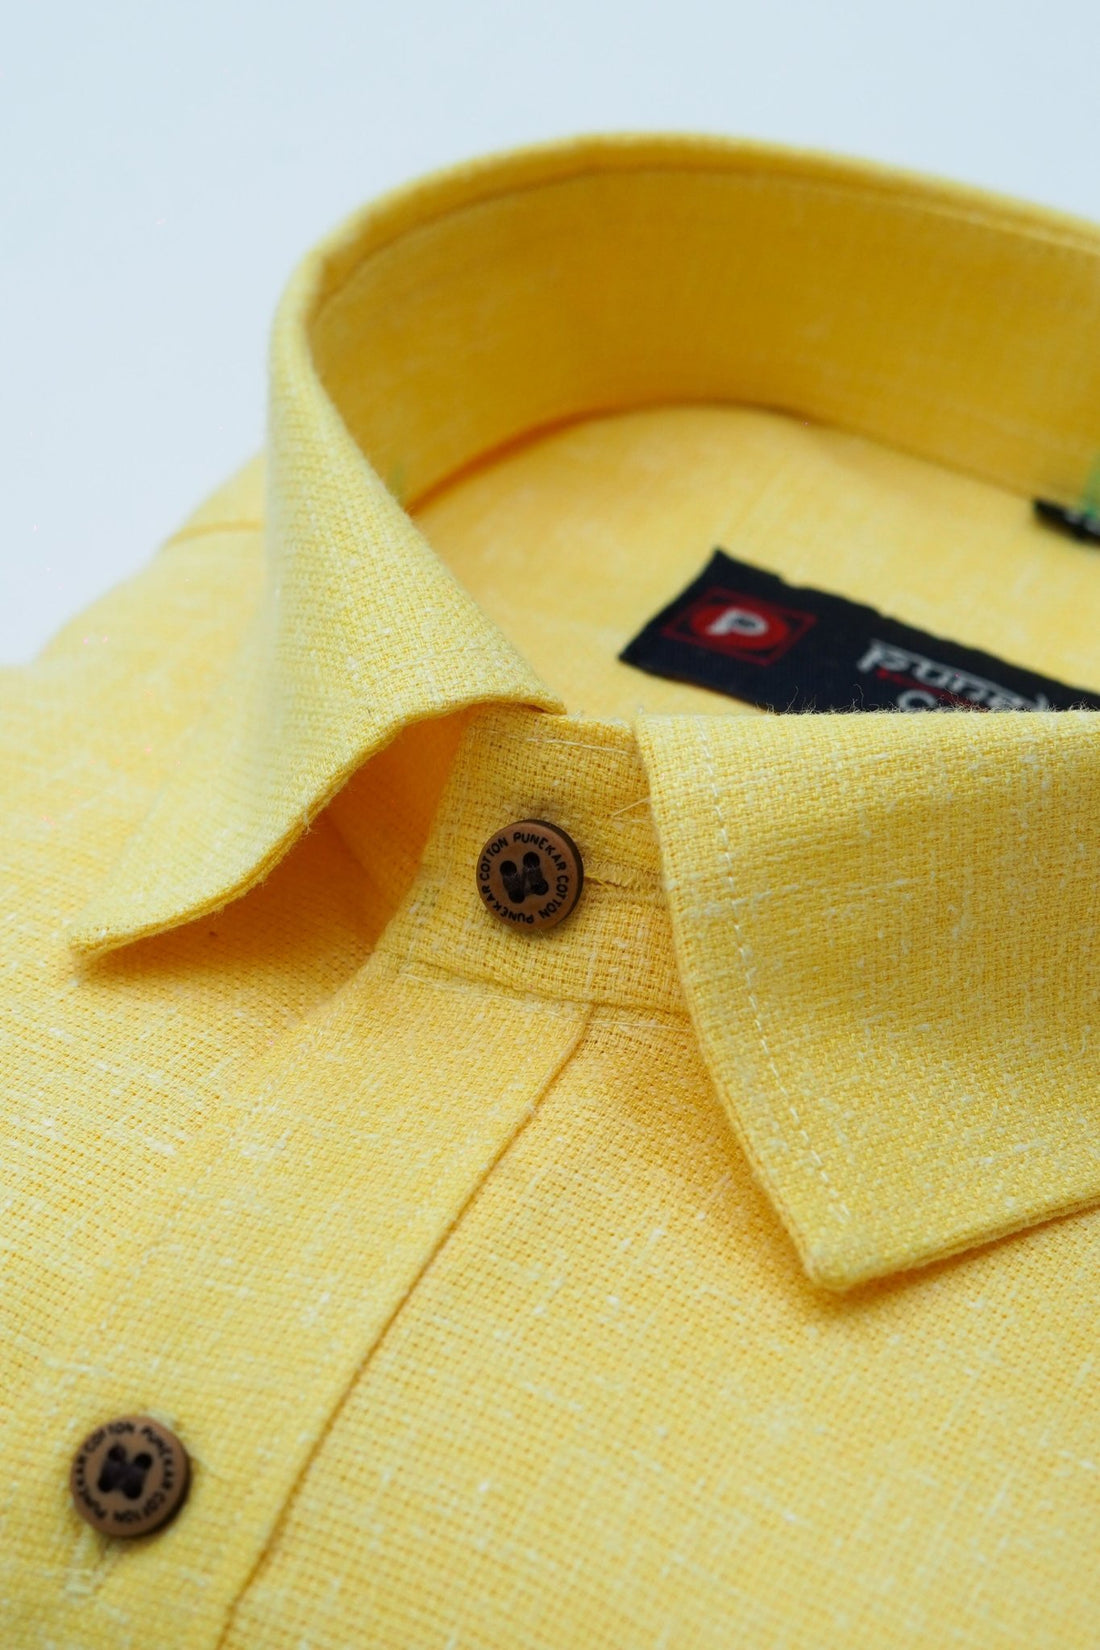 Punekar Cotton Yellow Color Cotton Linen Formal Shirt for Men&